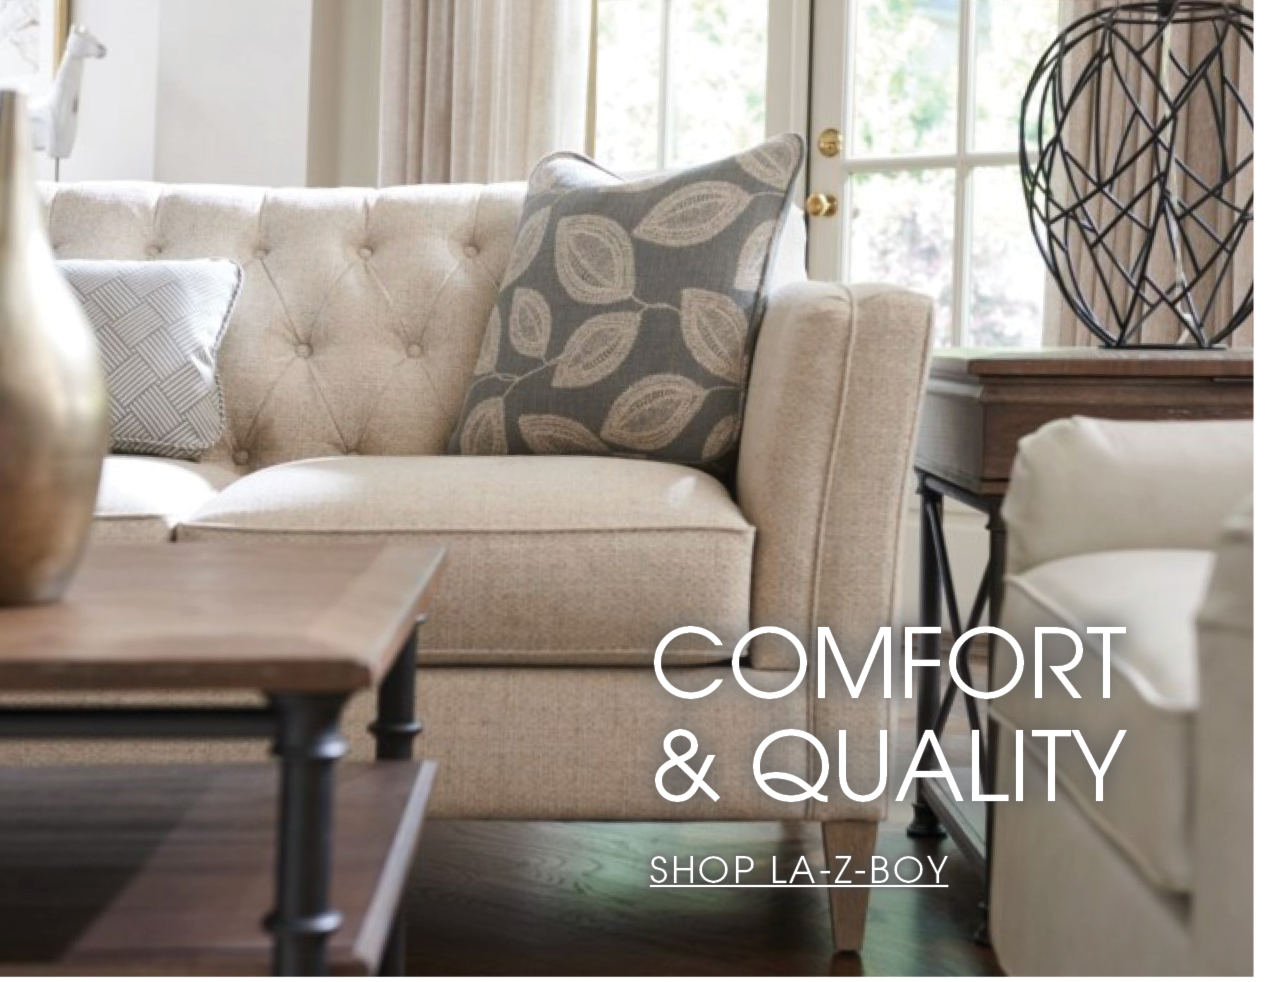 Comfort & Quality. Shop La-Z-Boy.